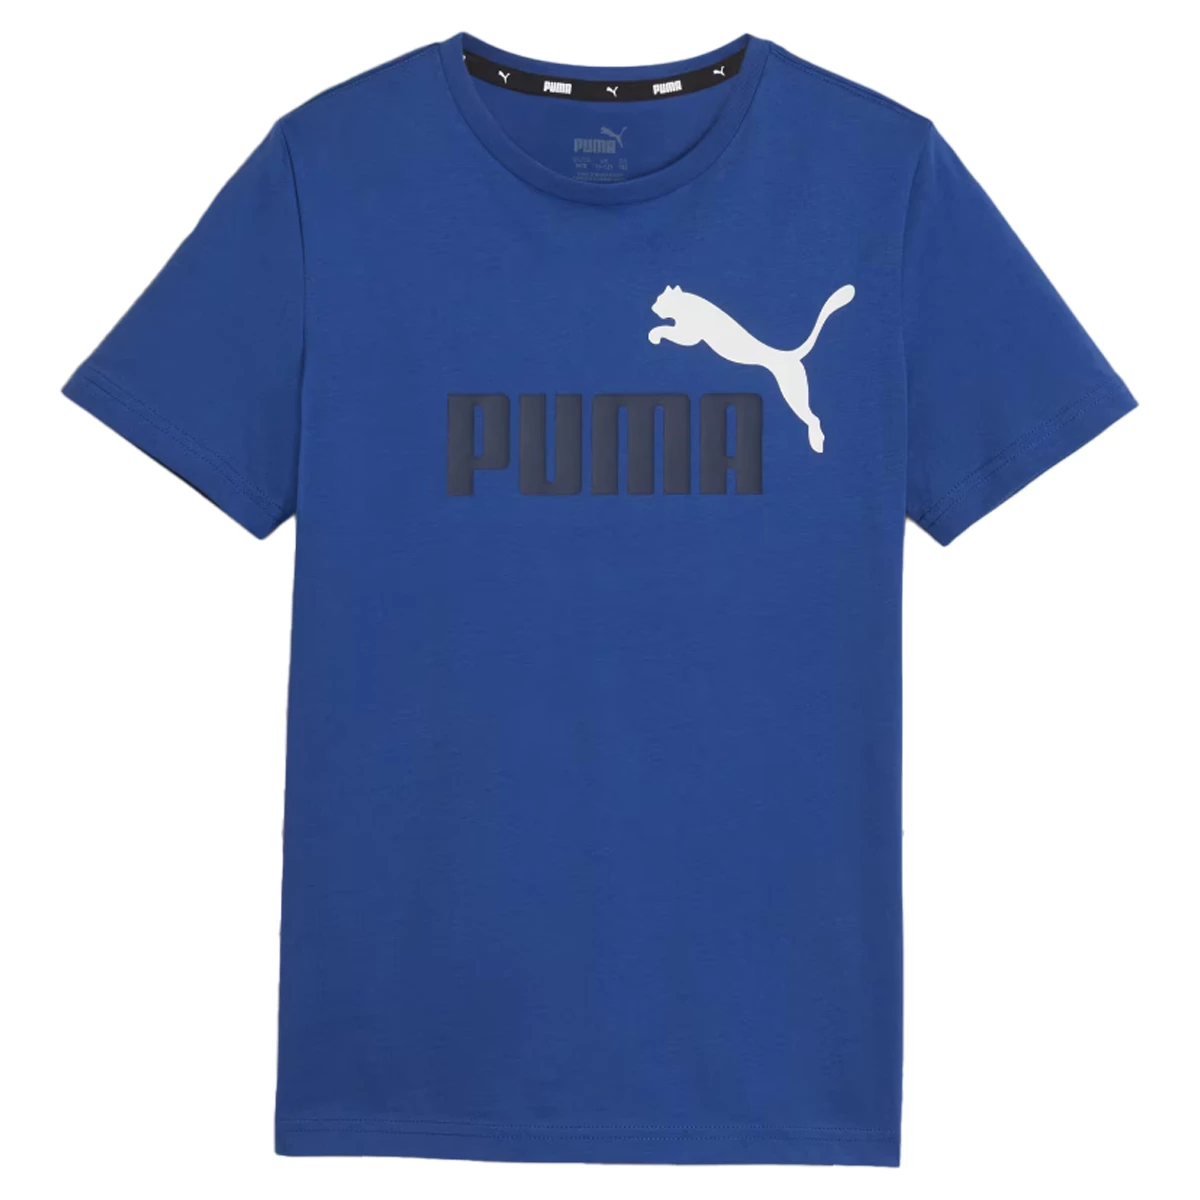 Afbeelding van Puma Essentials+ 2 col logo t-shirt